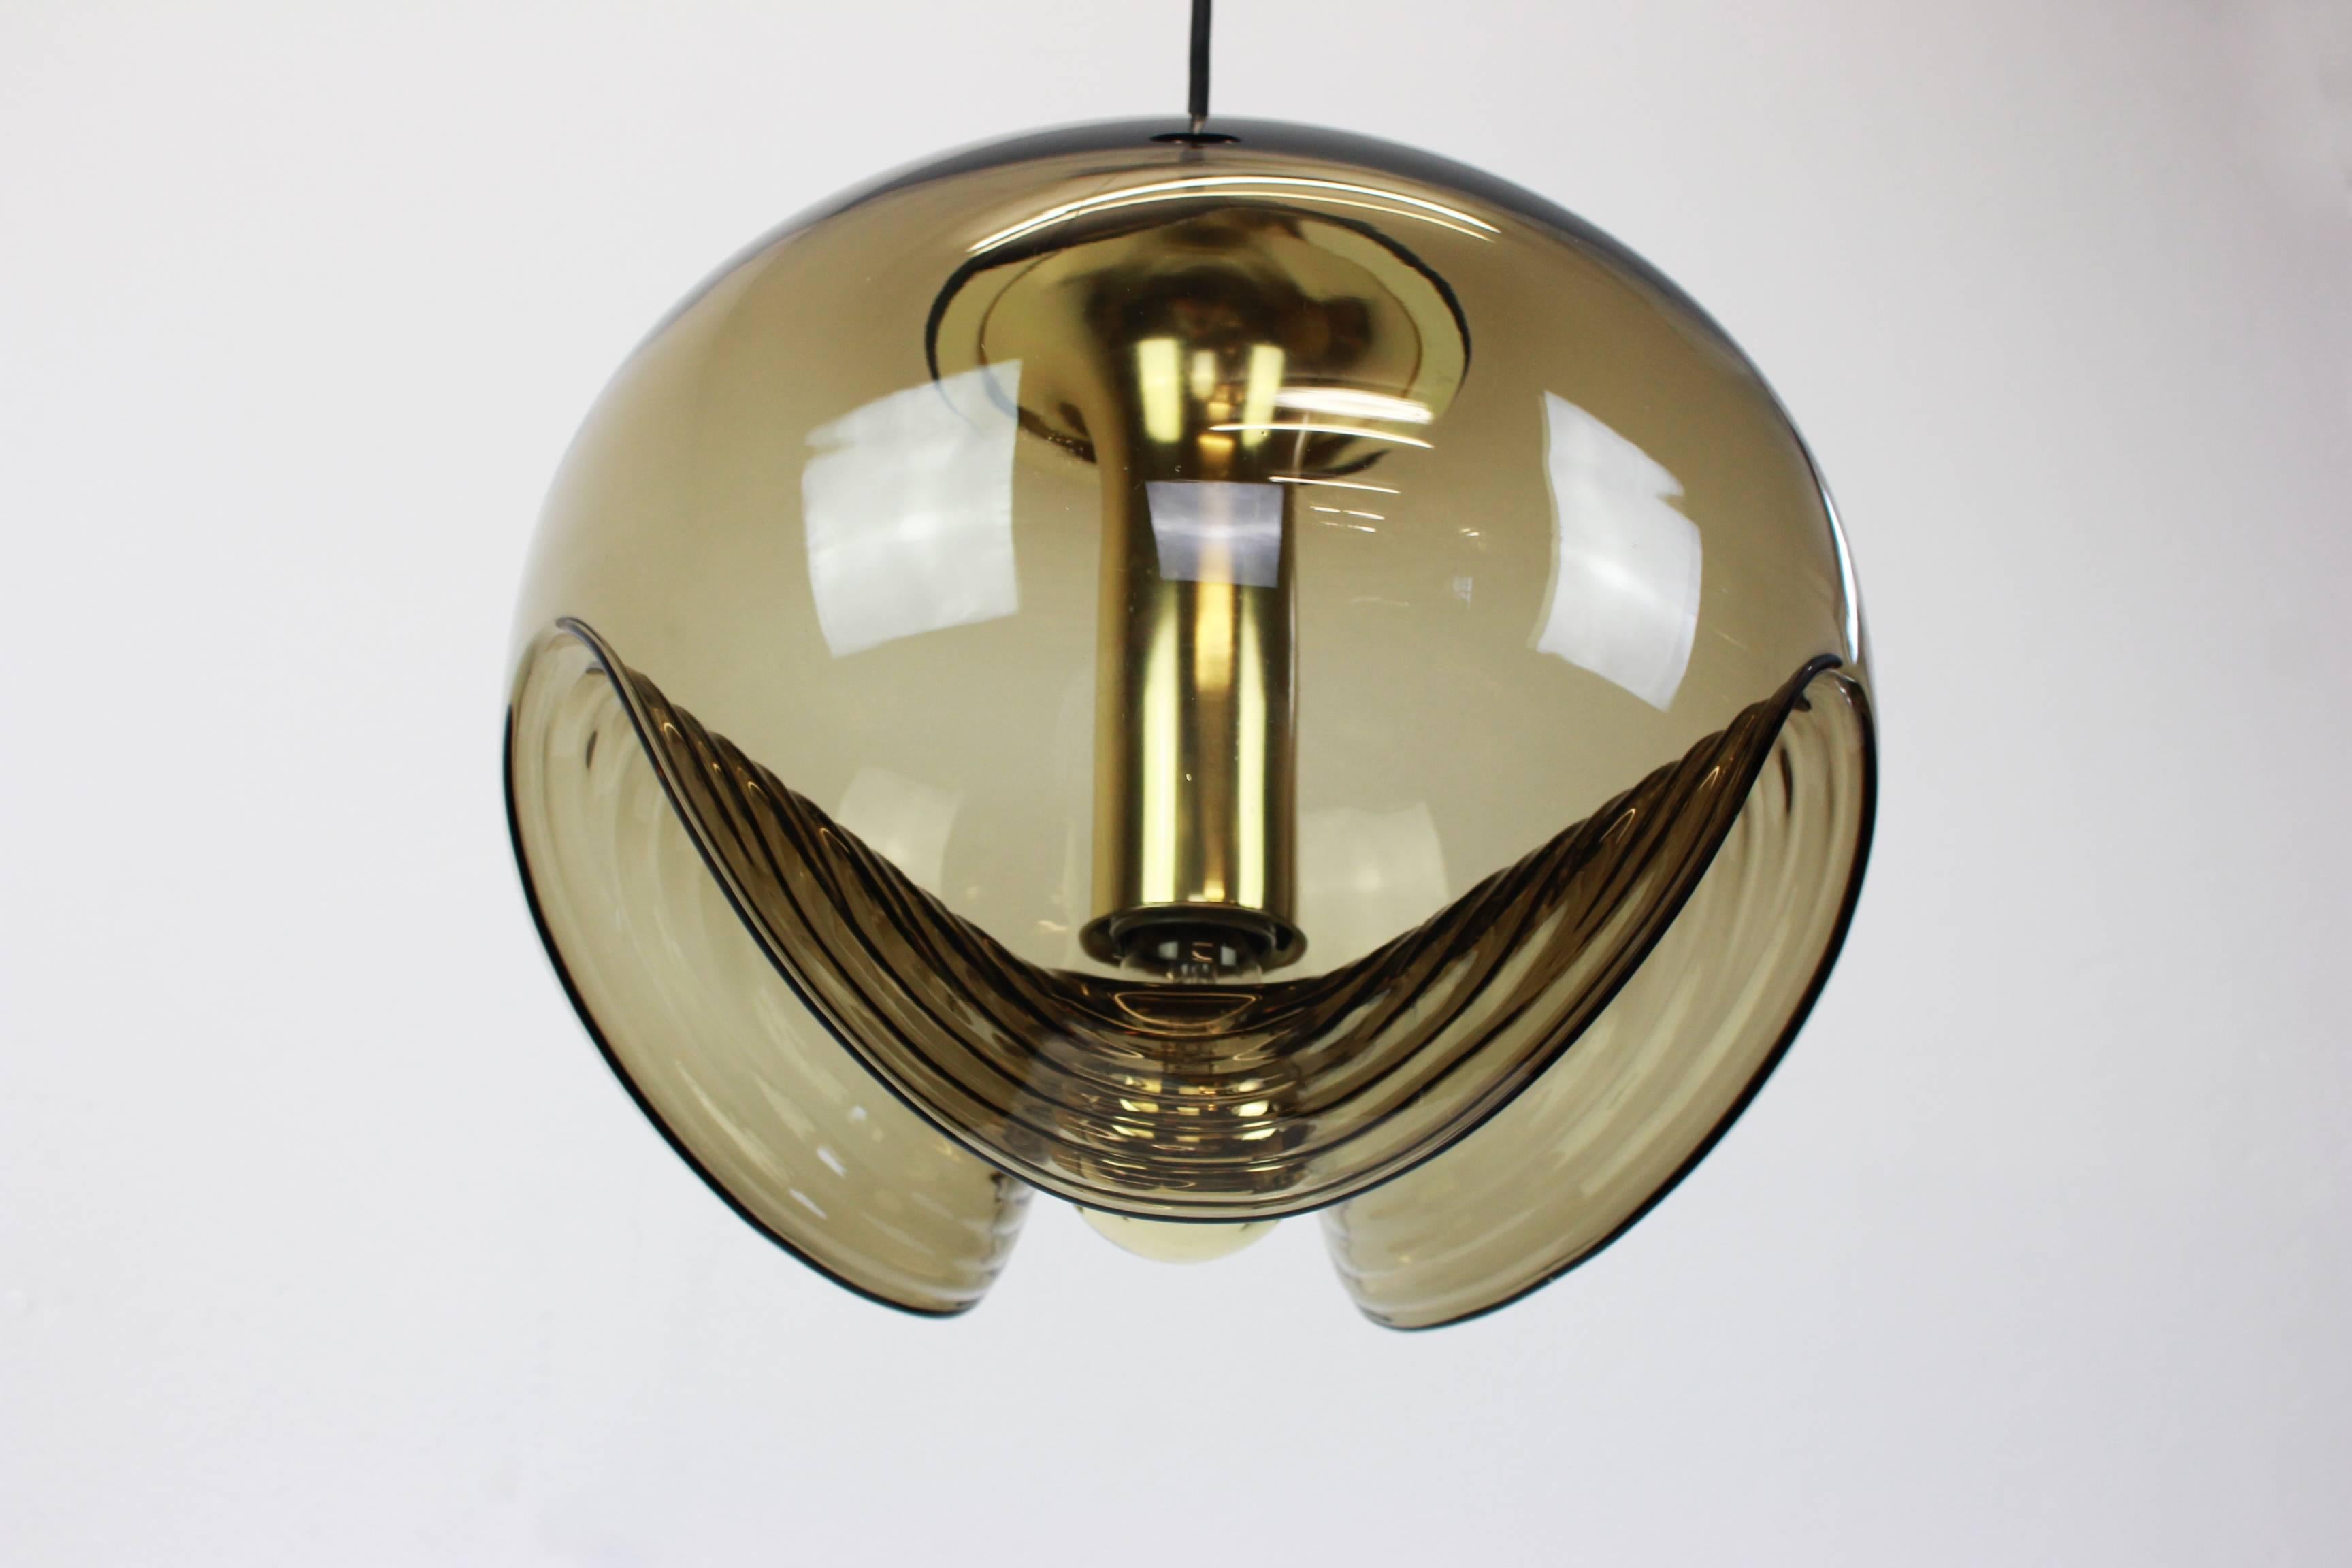 Un pendentif rond spécial en verre fumé biomorphe conçu par Koch & Lowy pour Peill & Putzler, fabriqué en Allemagne, vers les années 1970.

Douilles : 1 x ampoule standard E27. (100 W max).

La tige de chute peut être ajustée gratuitement selon